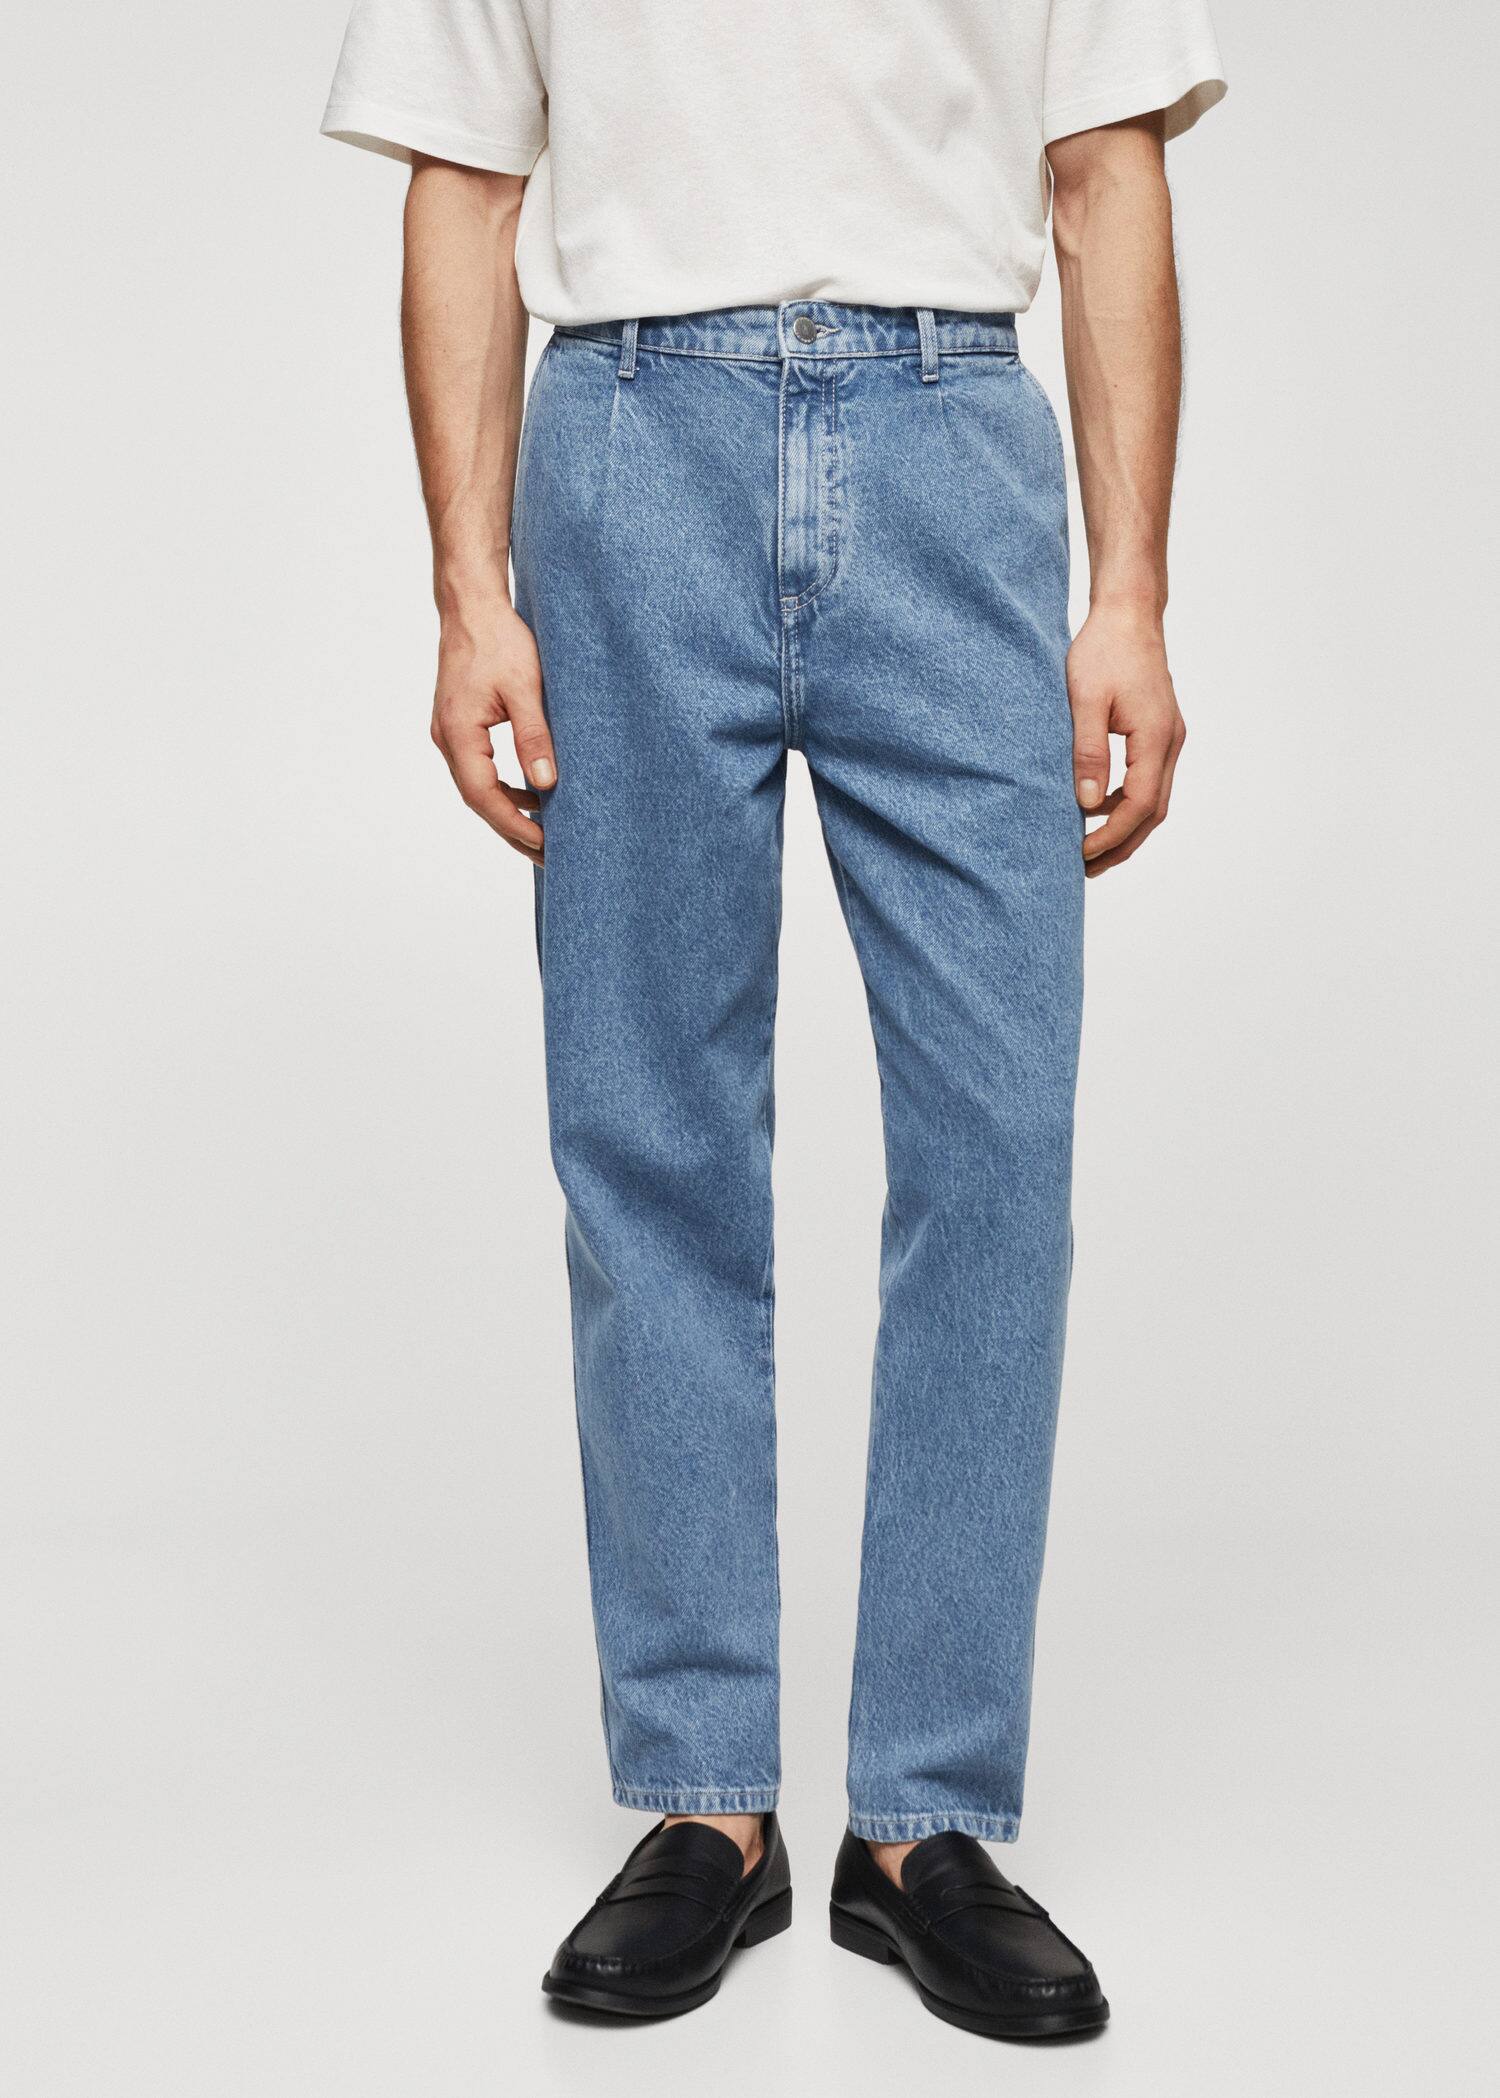 Dart slouchy jeans - Náhled ve středové rovině